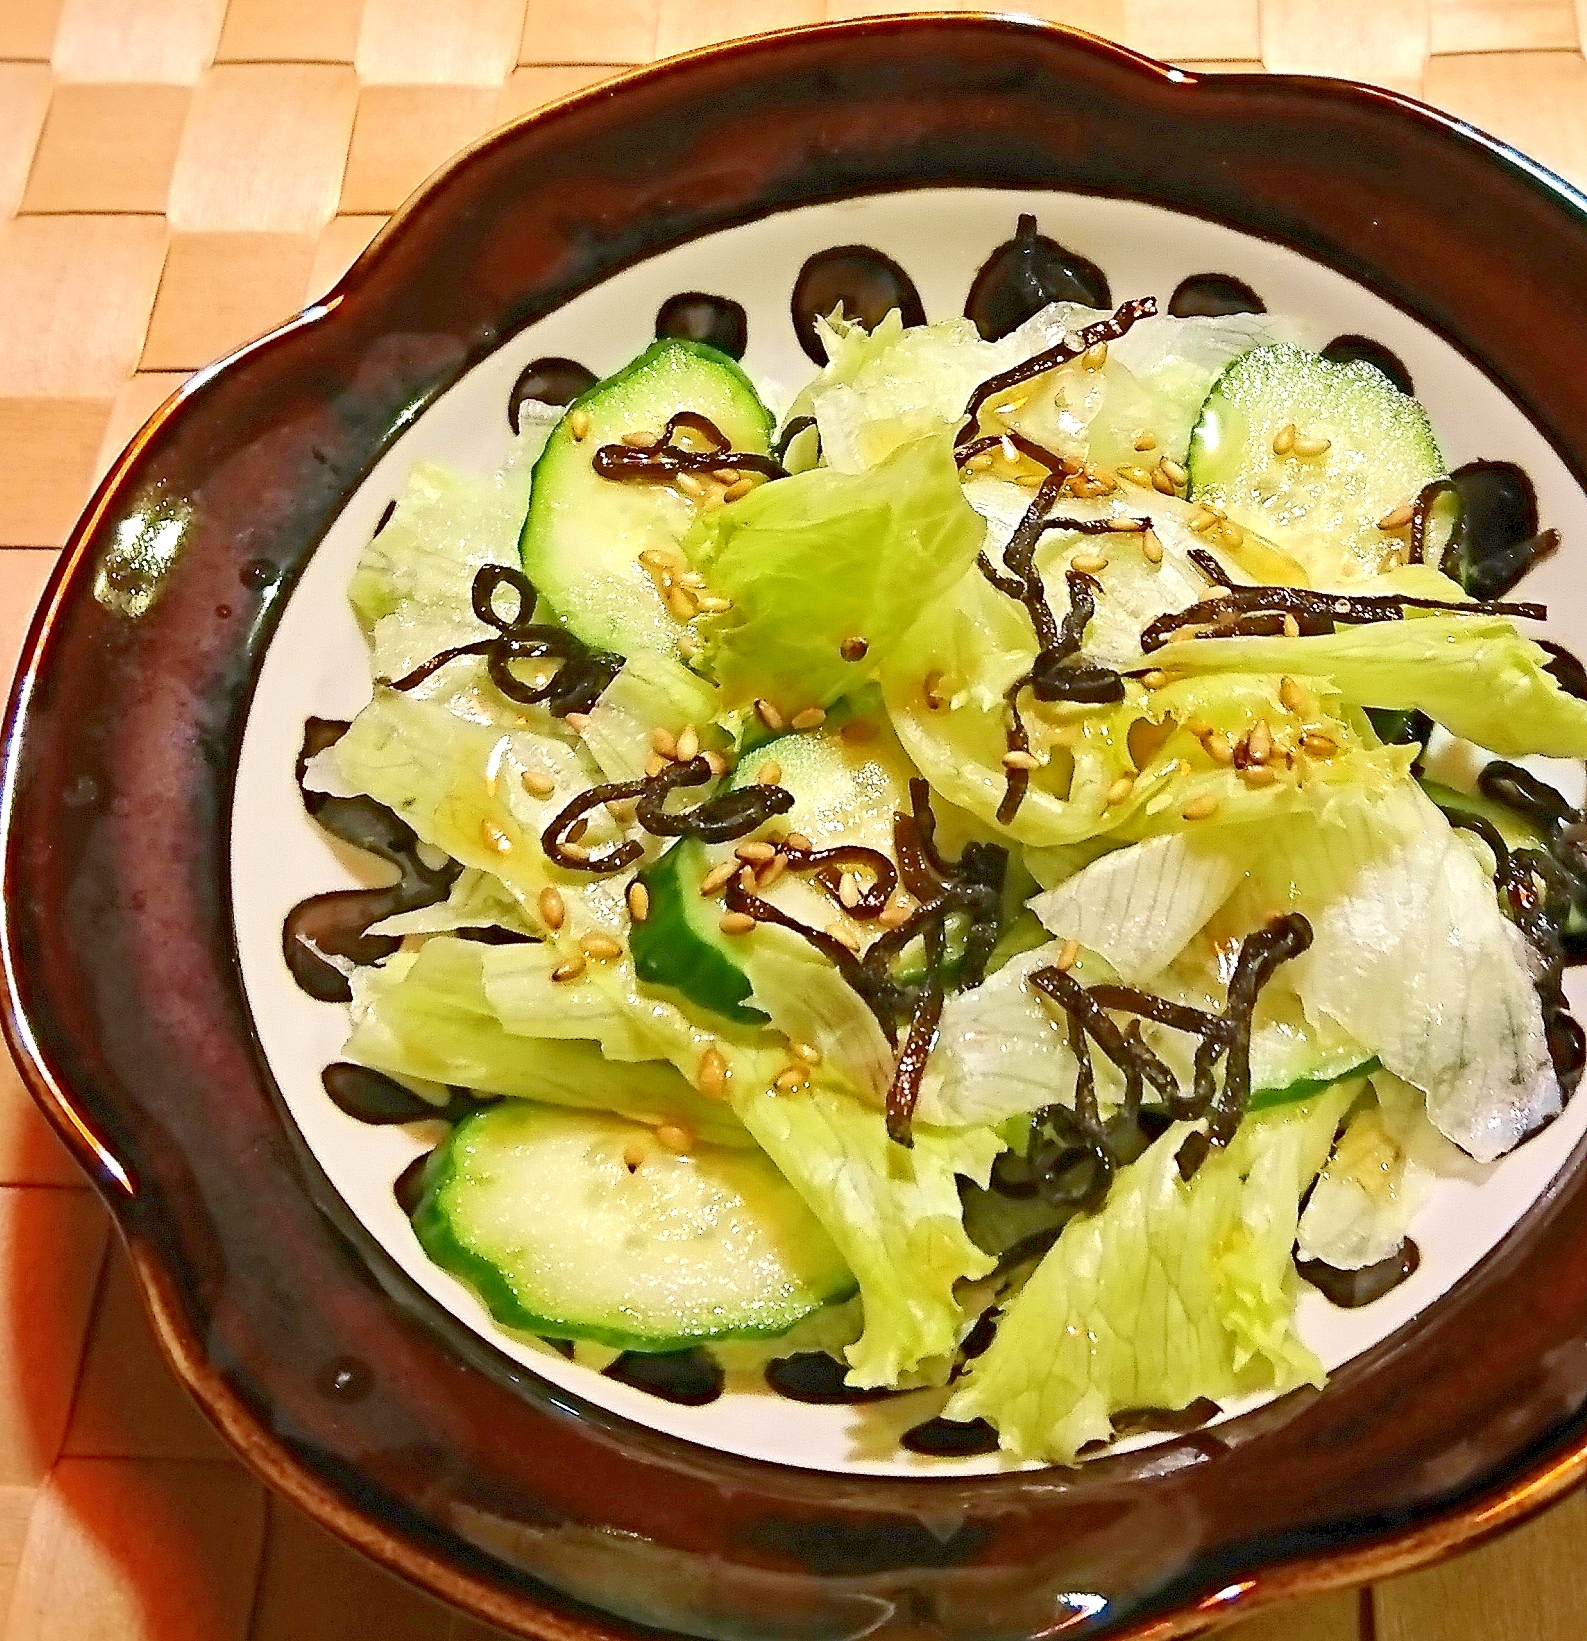 きゅうりとレタスの簡単塩昆布サラダ